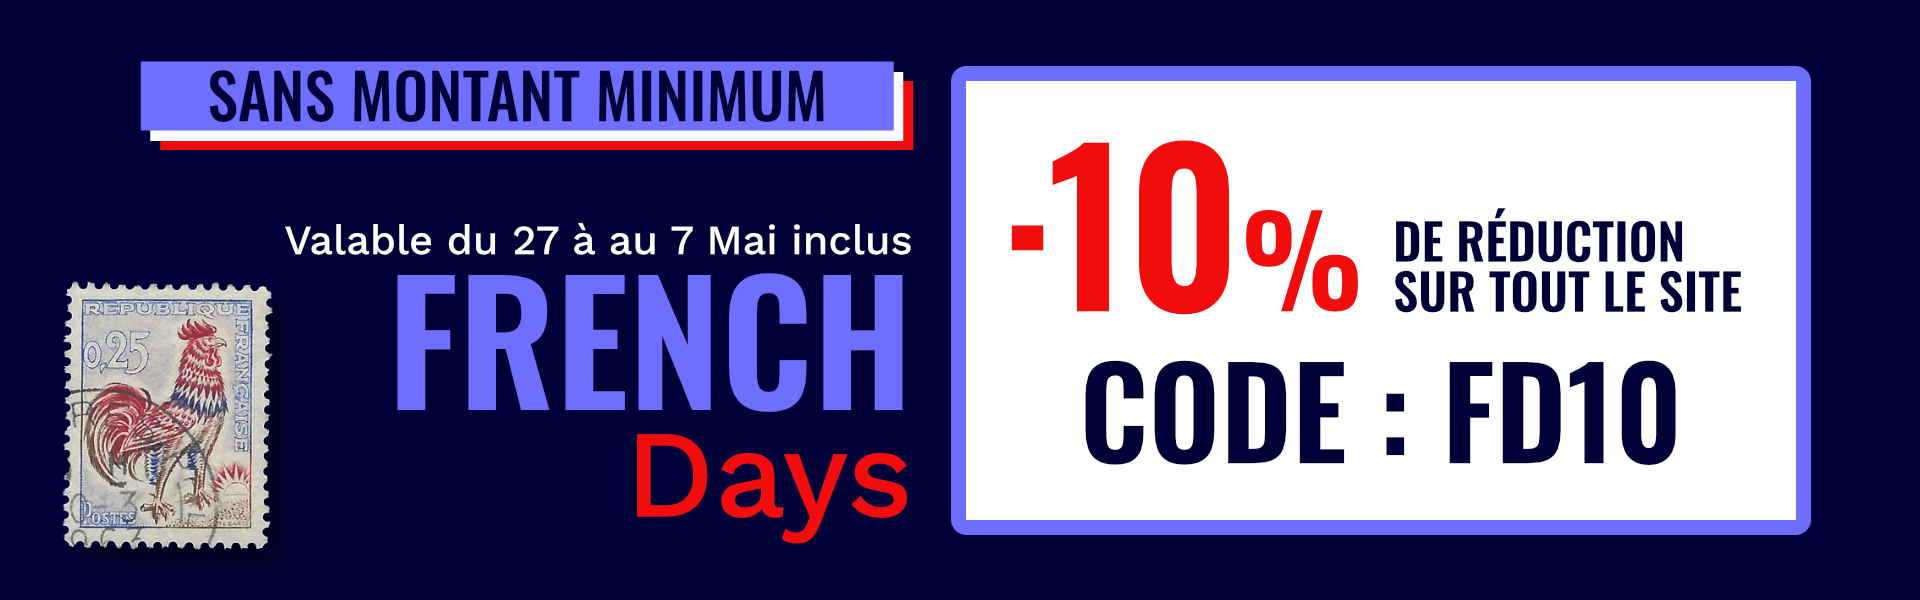 French days : - 10% sur tout le site avec le code FD10.